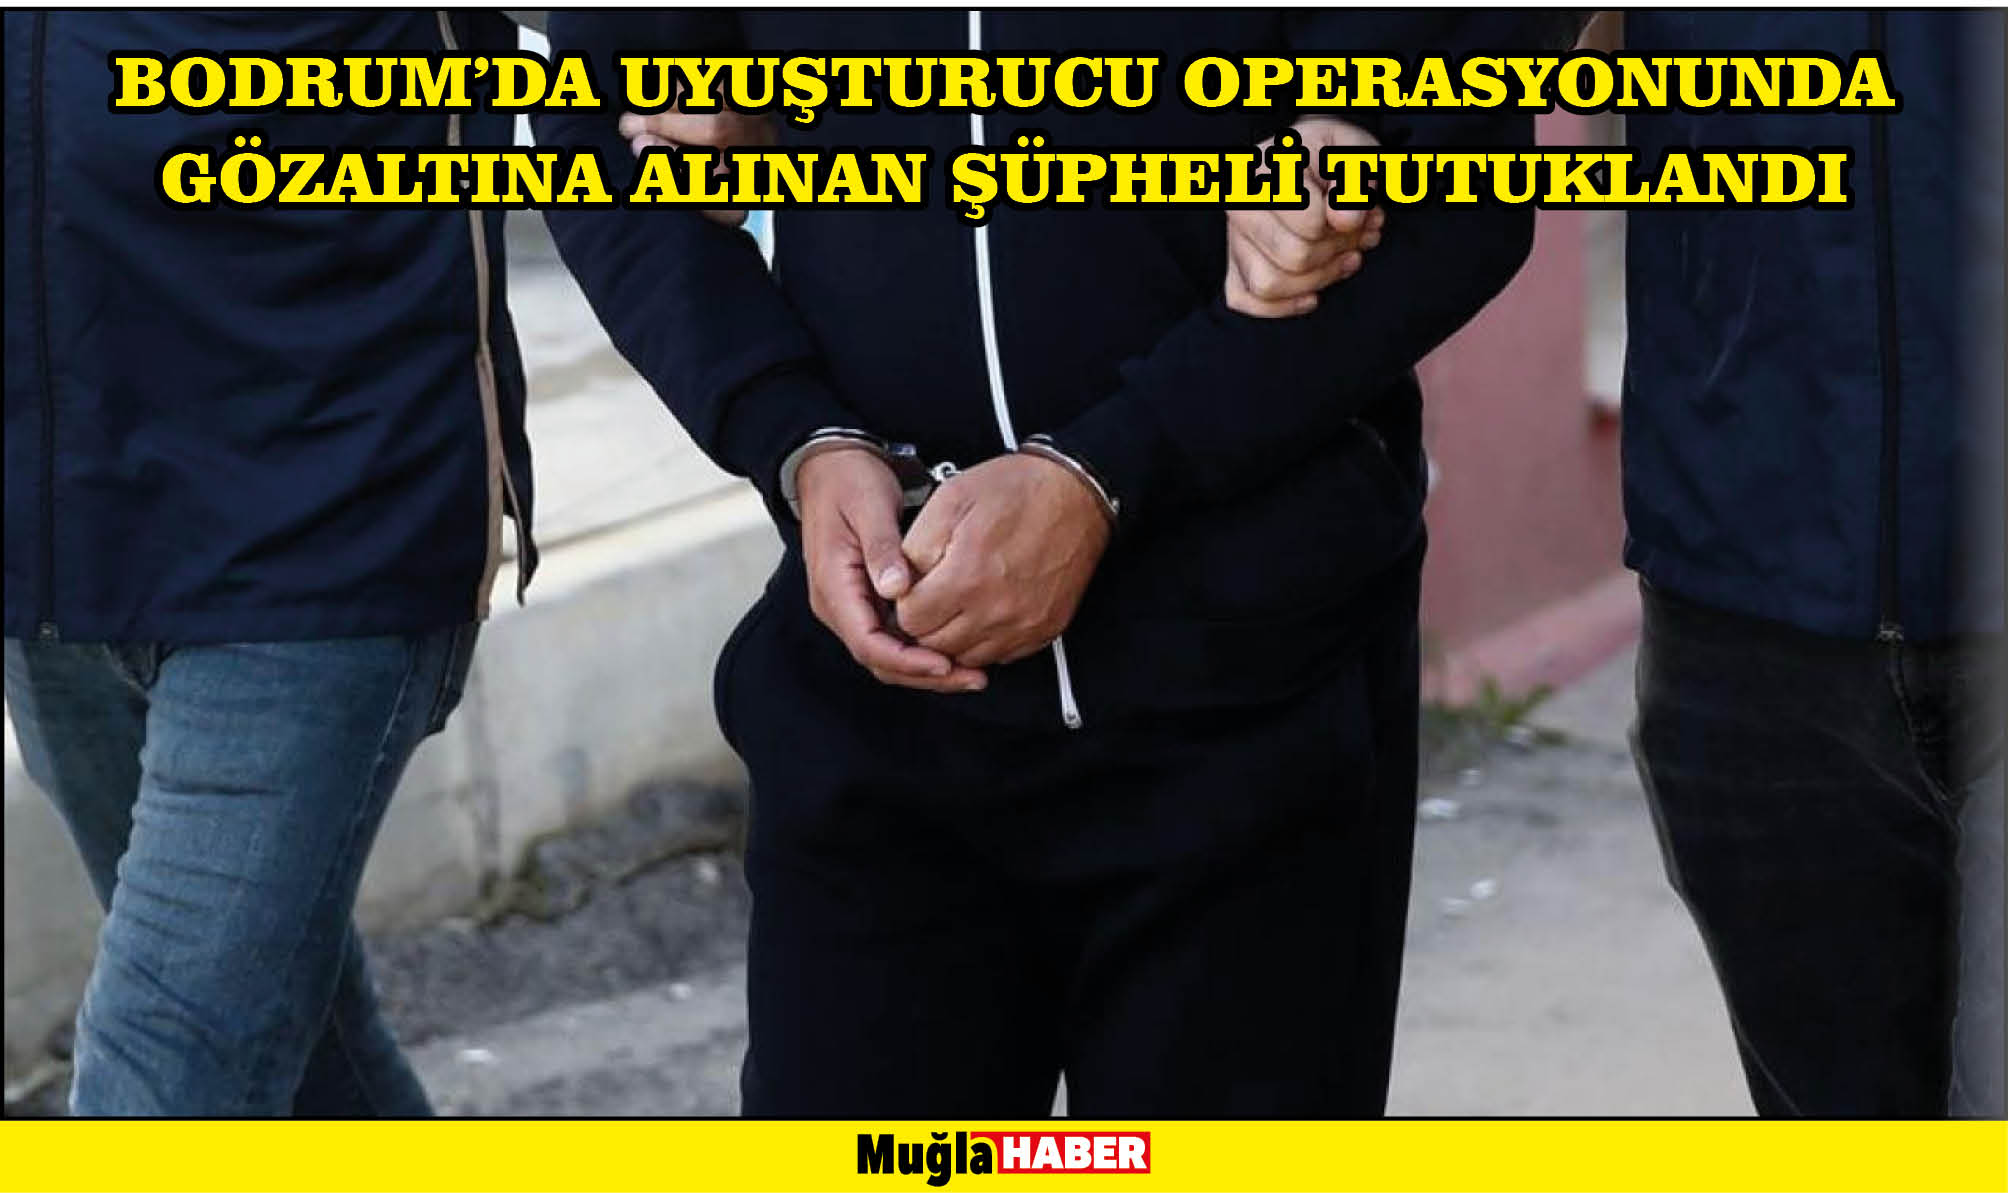 Bodrum'da uyuşturucu operasyonunda gözaltına alınan şüpheli tutuklandı